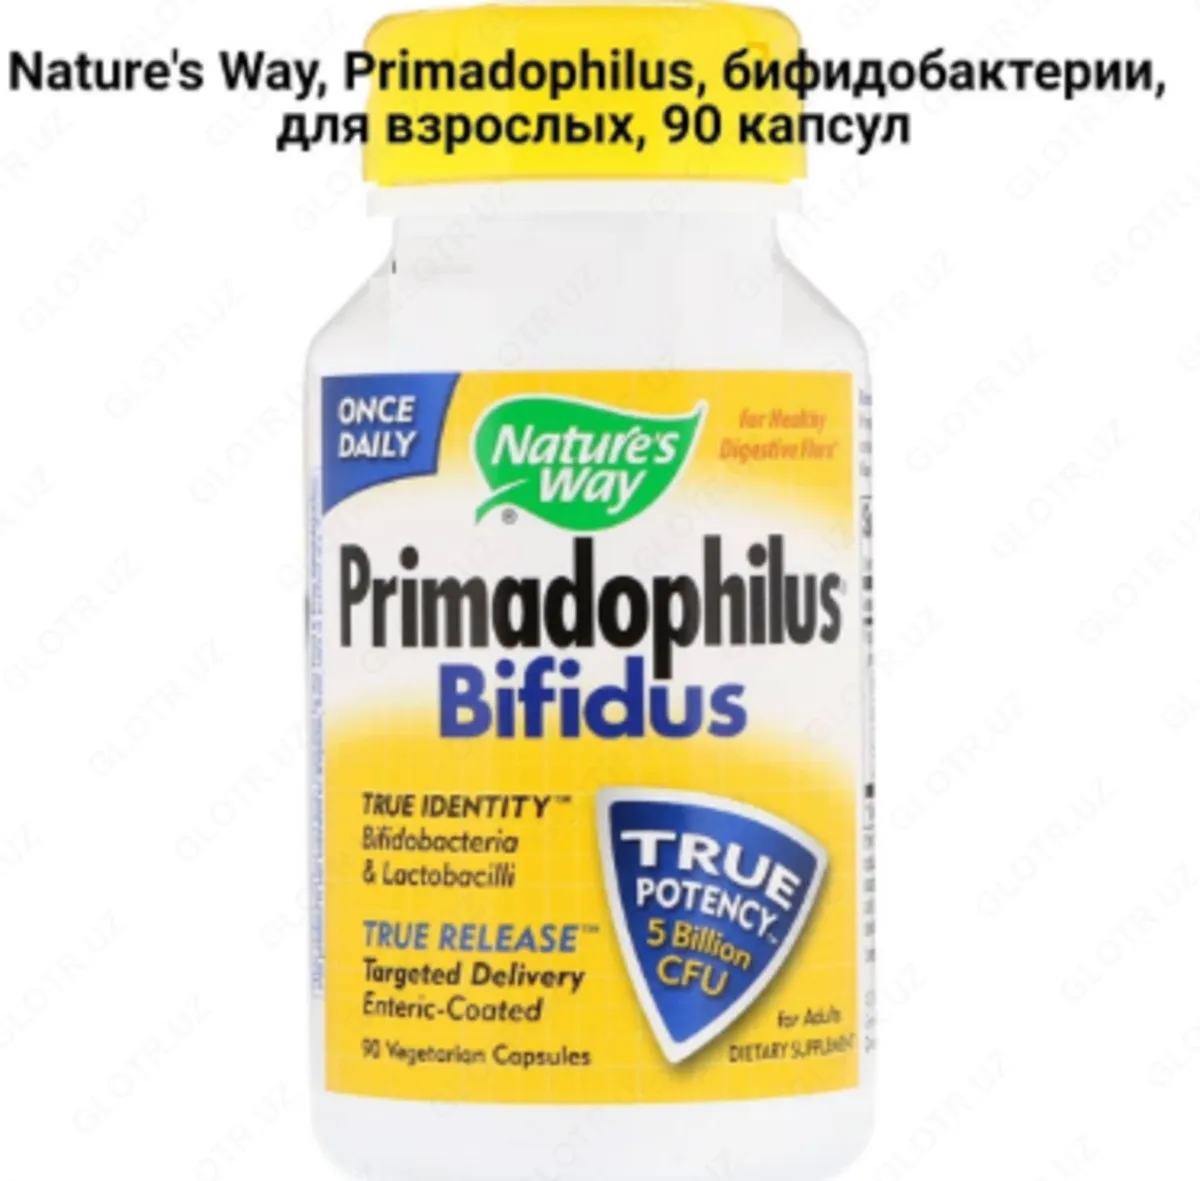 Примадофилус Бифидус Nature's way Primadophilus bifidus (90 капсул)#2